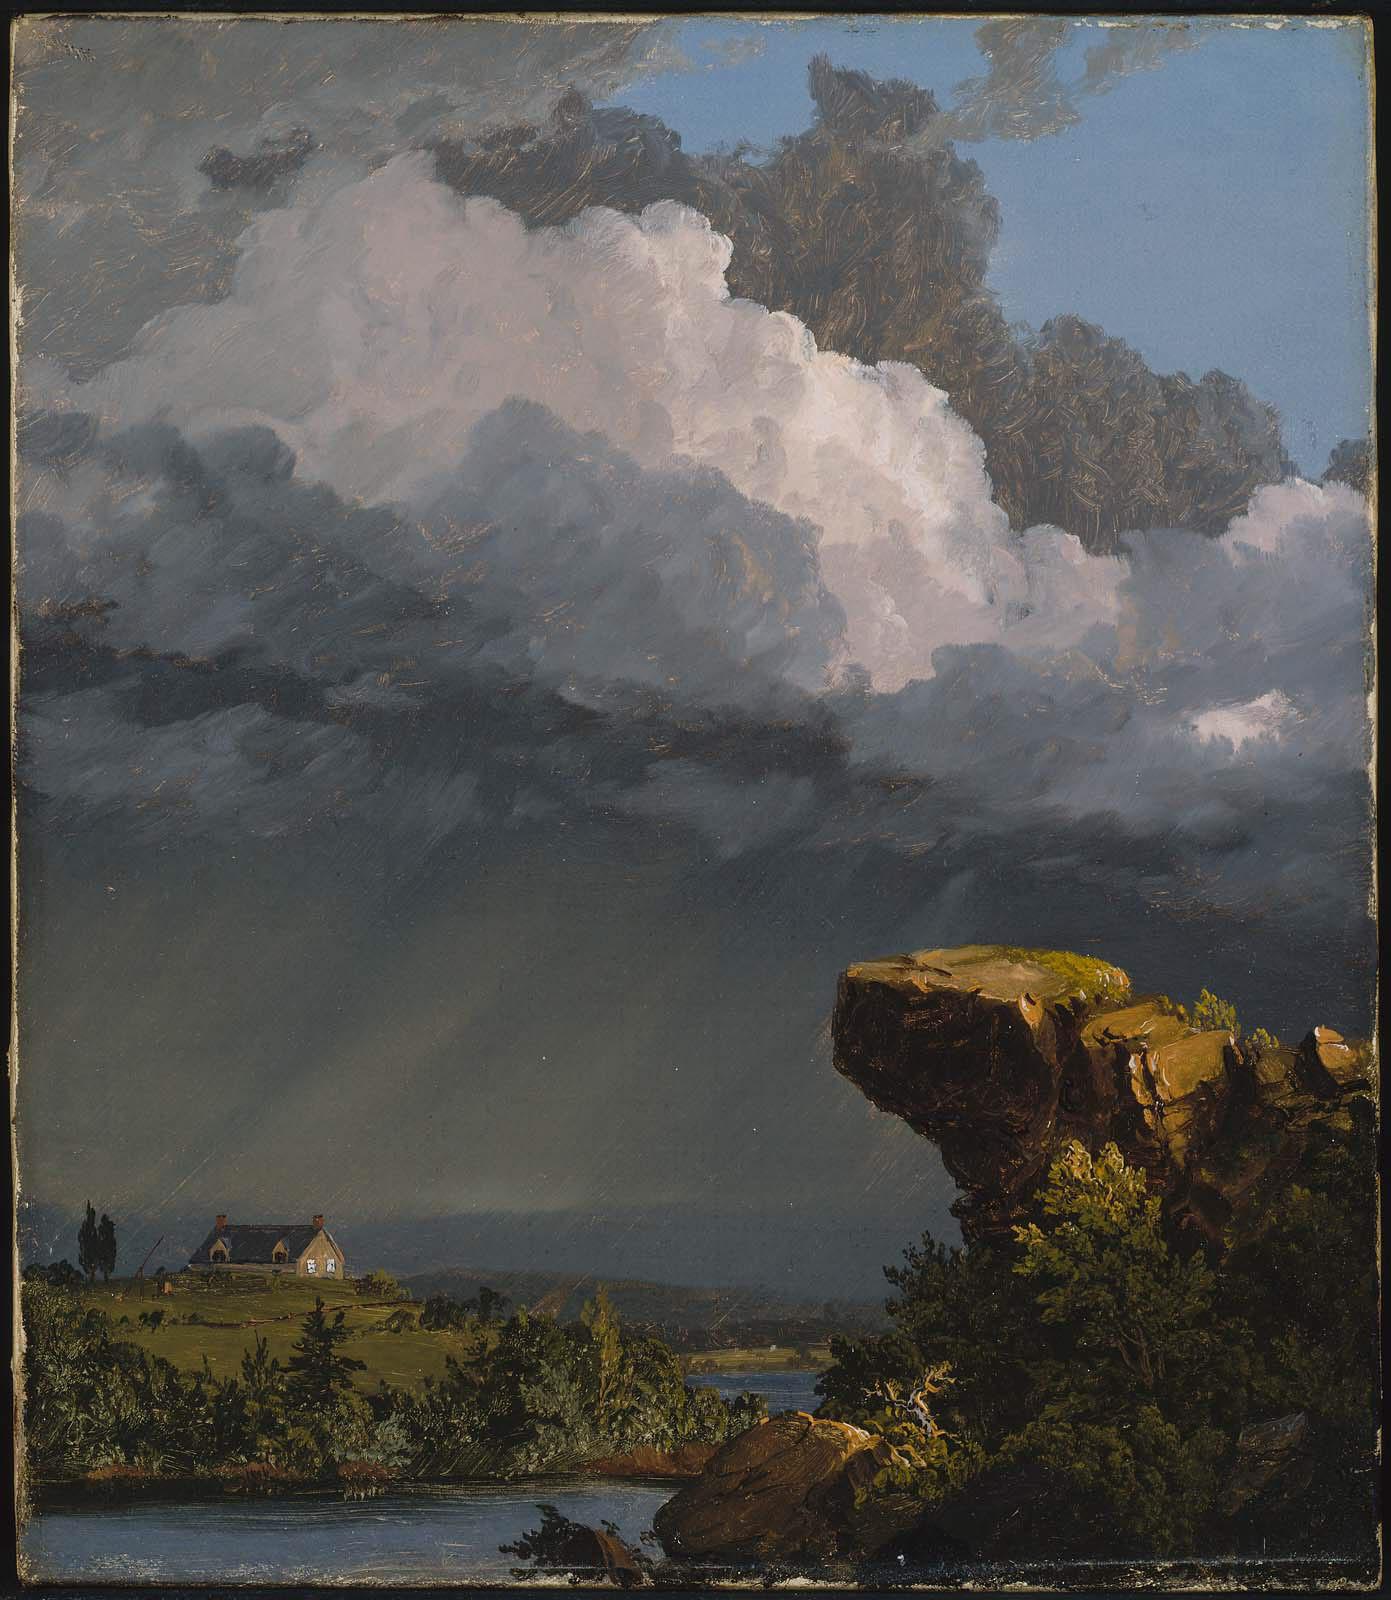 Буря, що минає by Frederic Edwin Church - 1849 - 35.88 x 30.48 см 